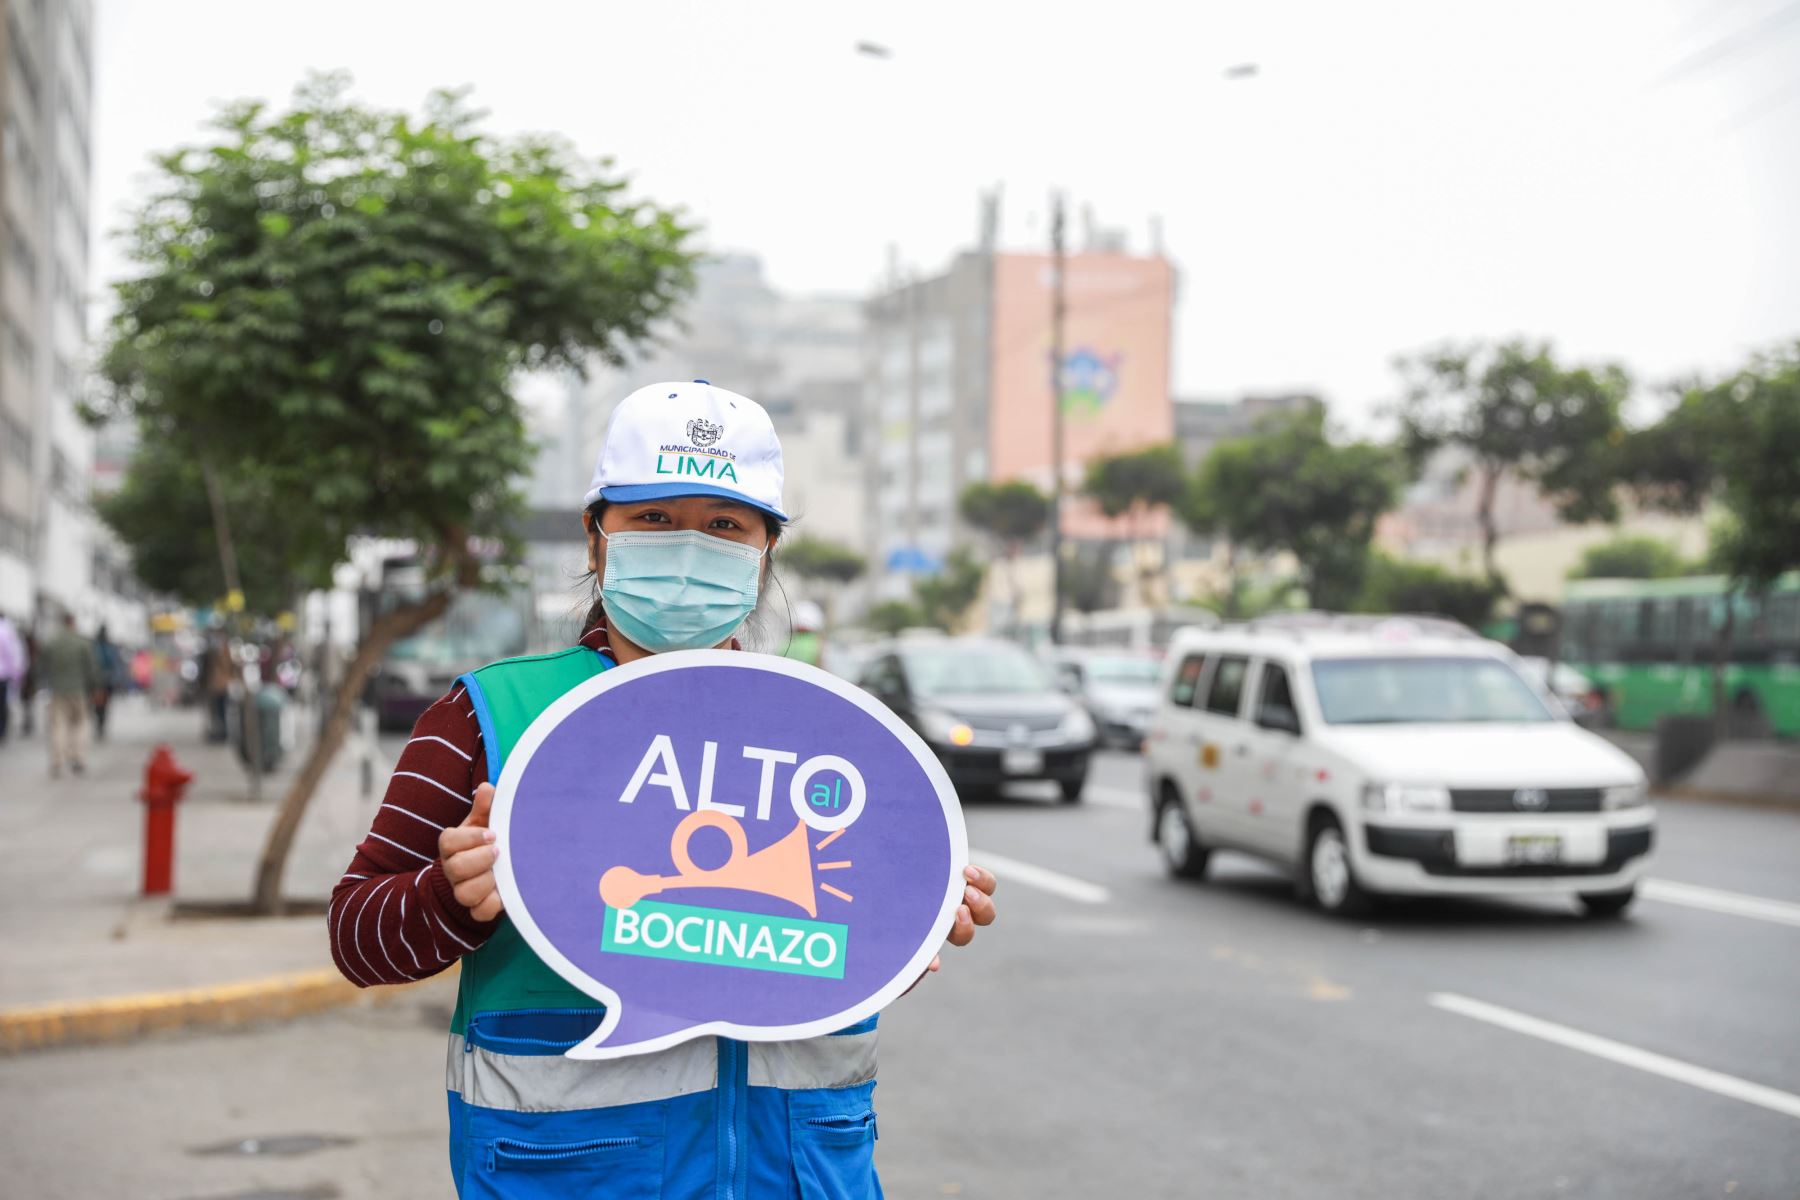 La Municipalidad de Lima inició ayer la campaña Alto al Bocinazo, mediante la cual se busca luchar contra la contaminación sonora y el uso desmedido del claxon en la ciudad.  Foto: ANDINA/archivo